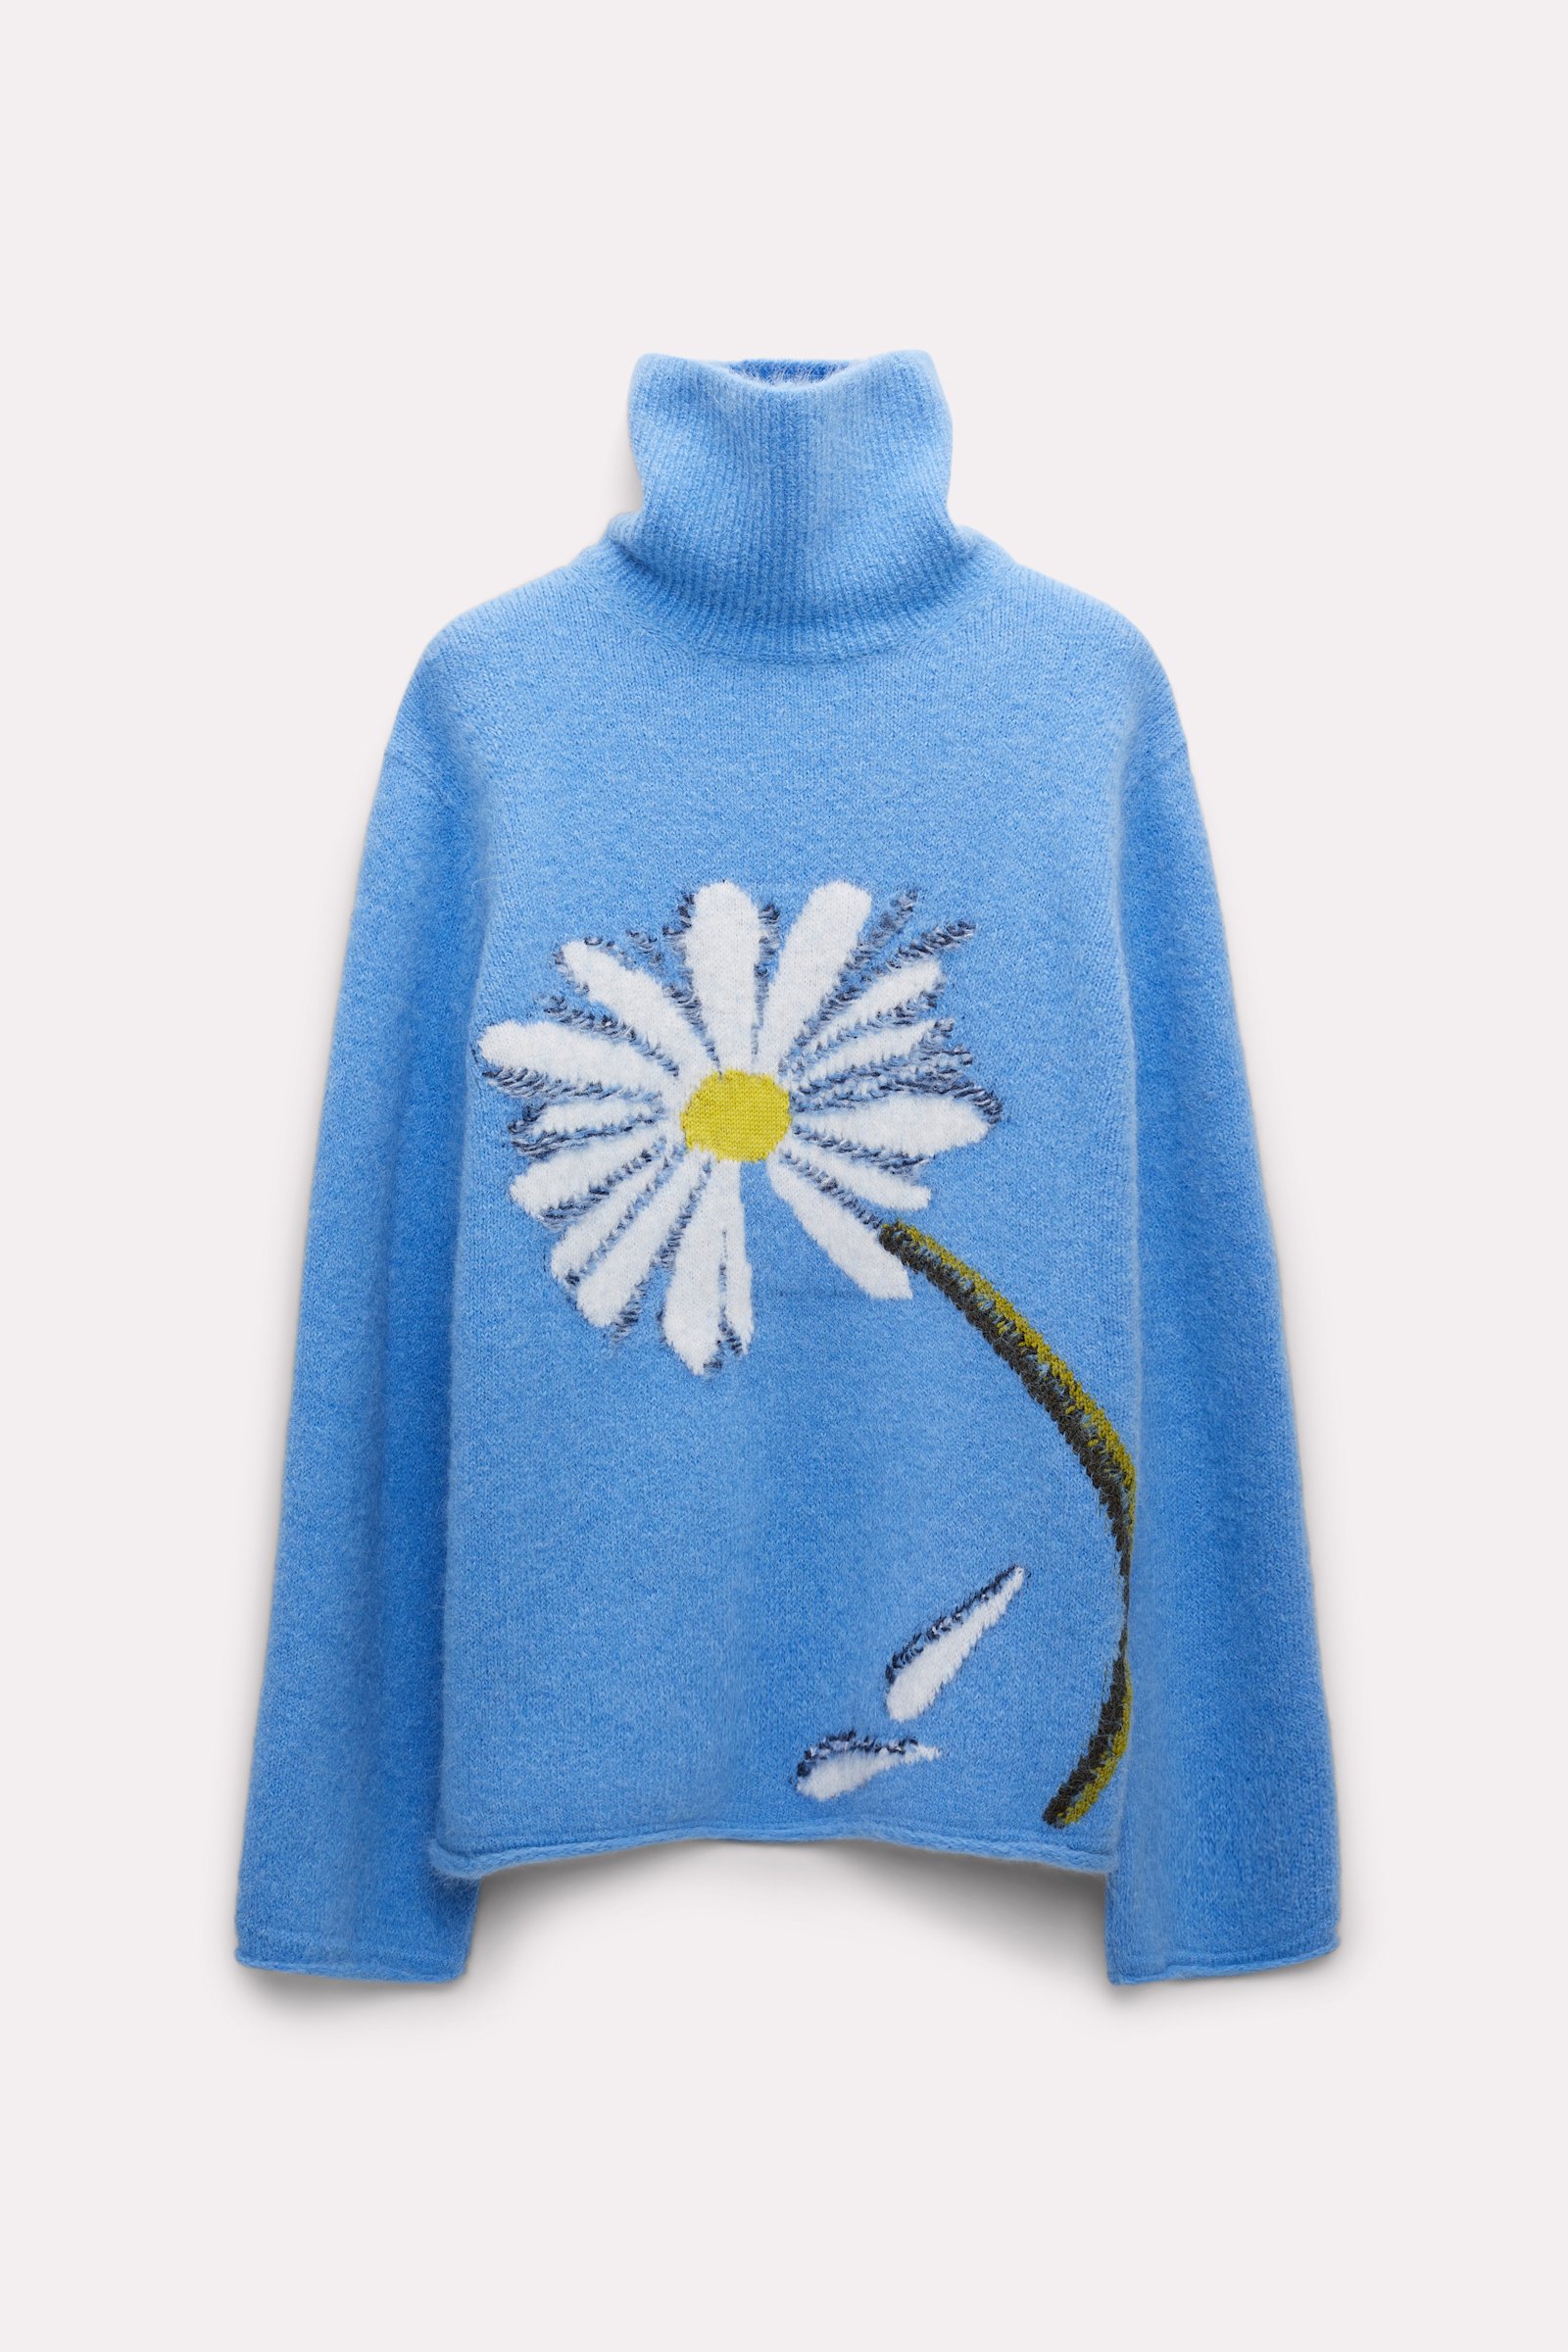 Dorothee Schumacher Turtleneck pullover with intarsia knit flower cornflower blue